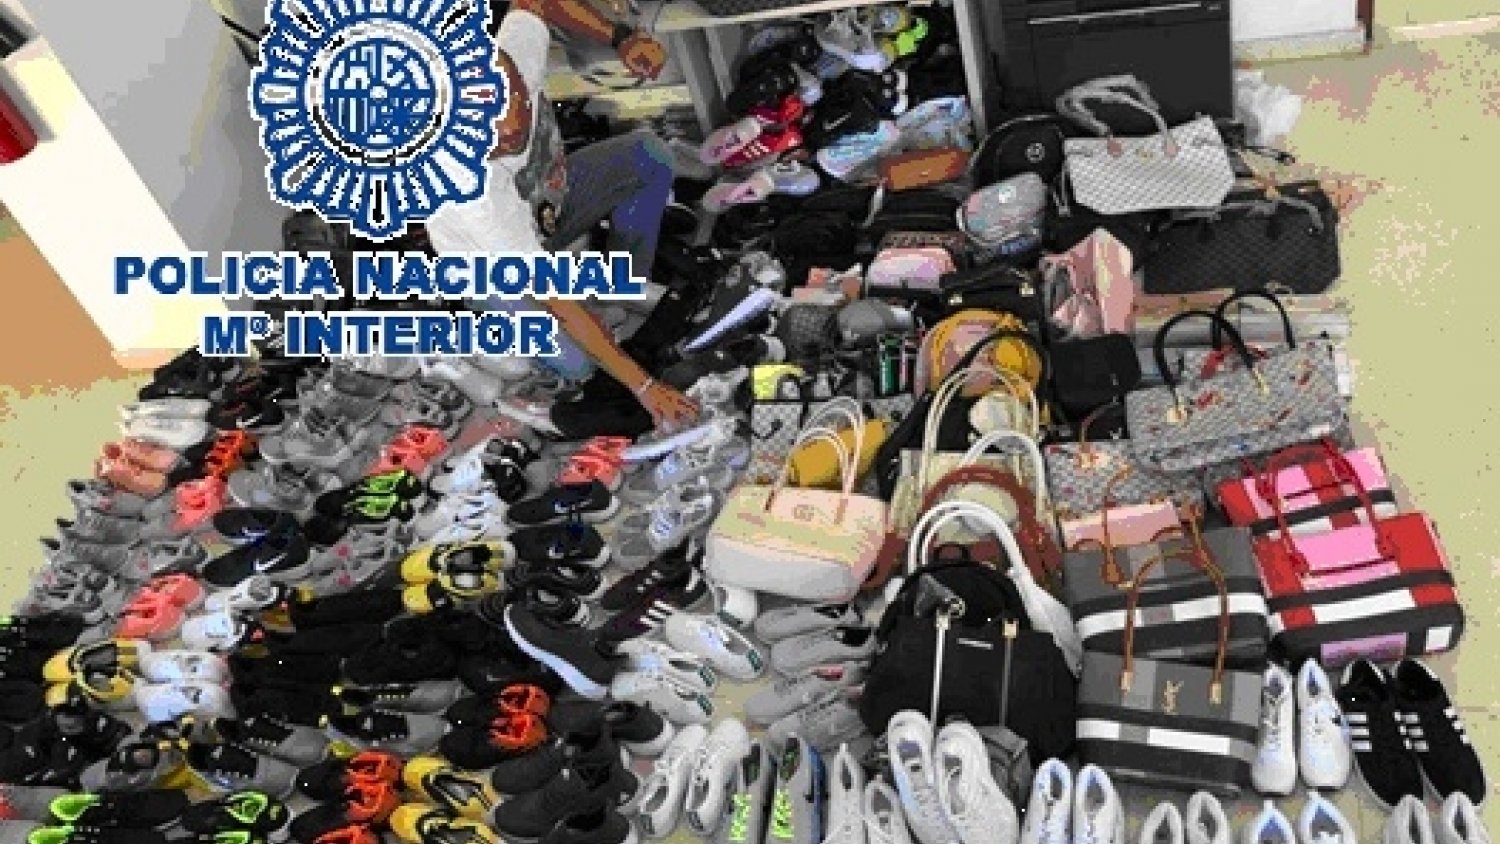 La Policía Nacional interviene en Benalmádena 406 productos falsificados de marcas de reconocido prestigio